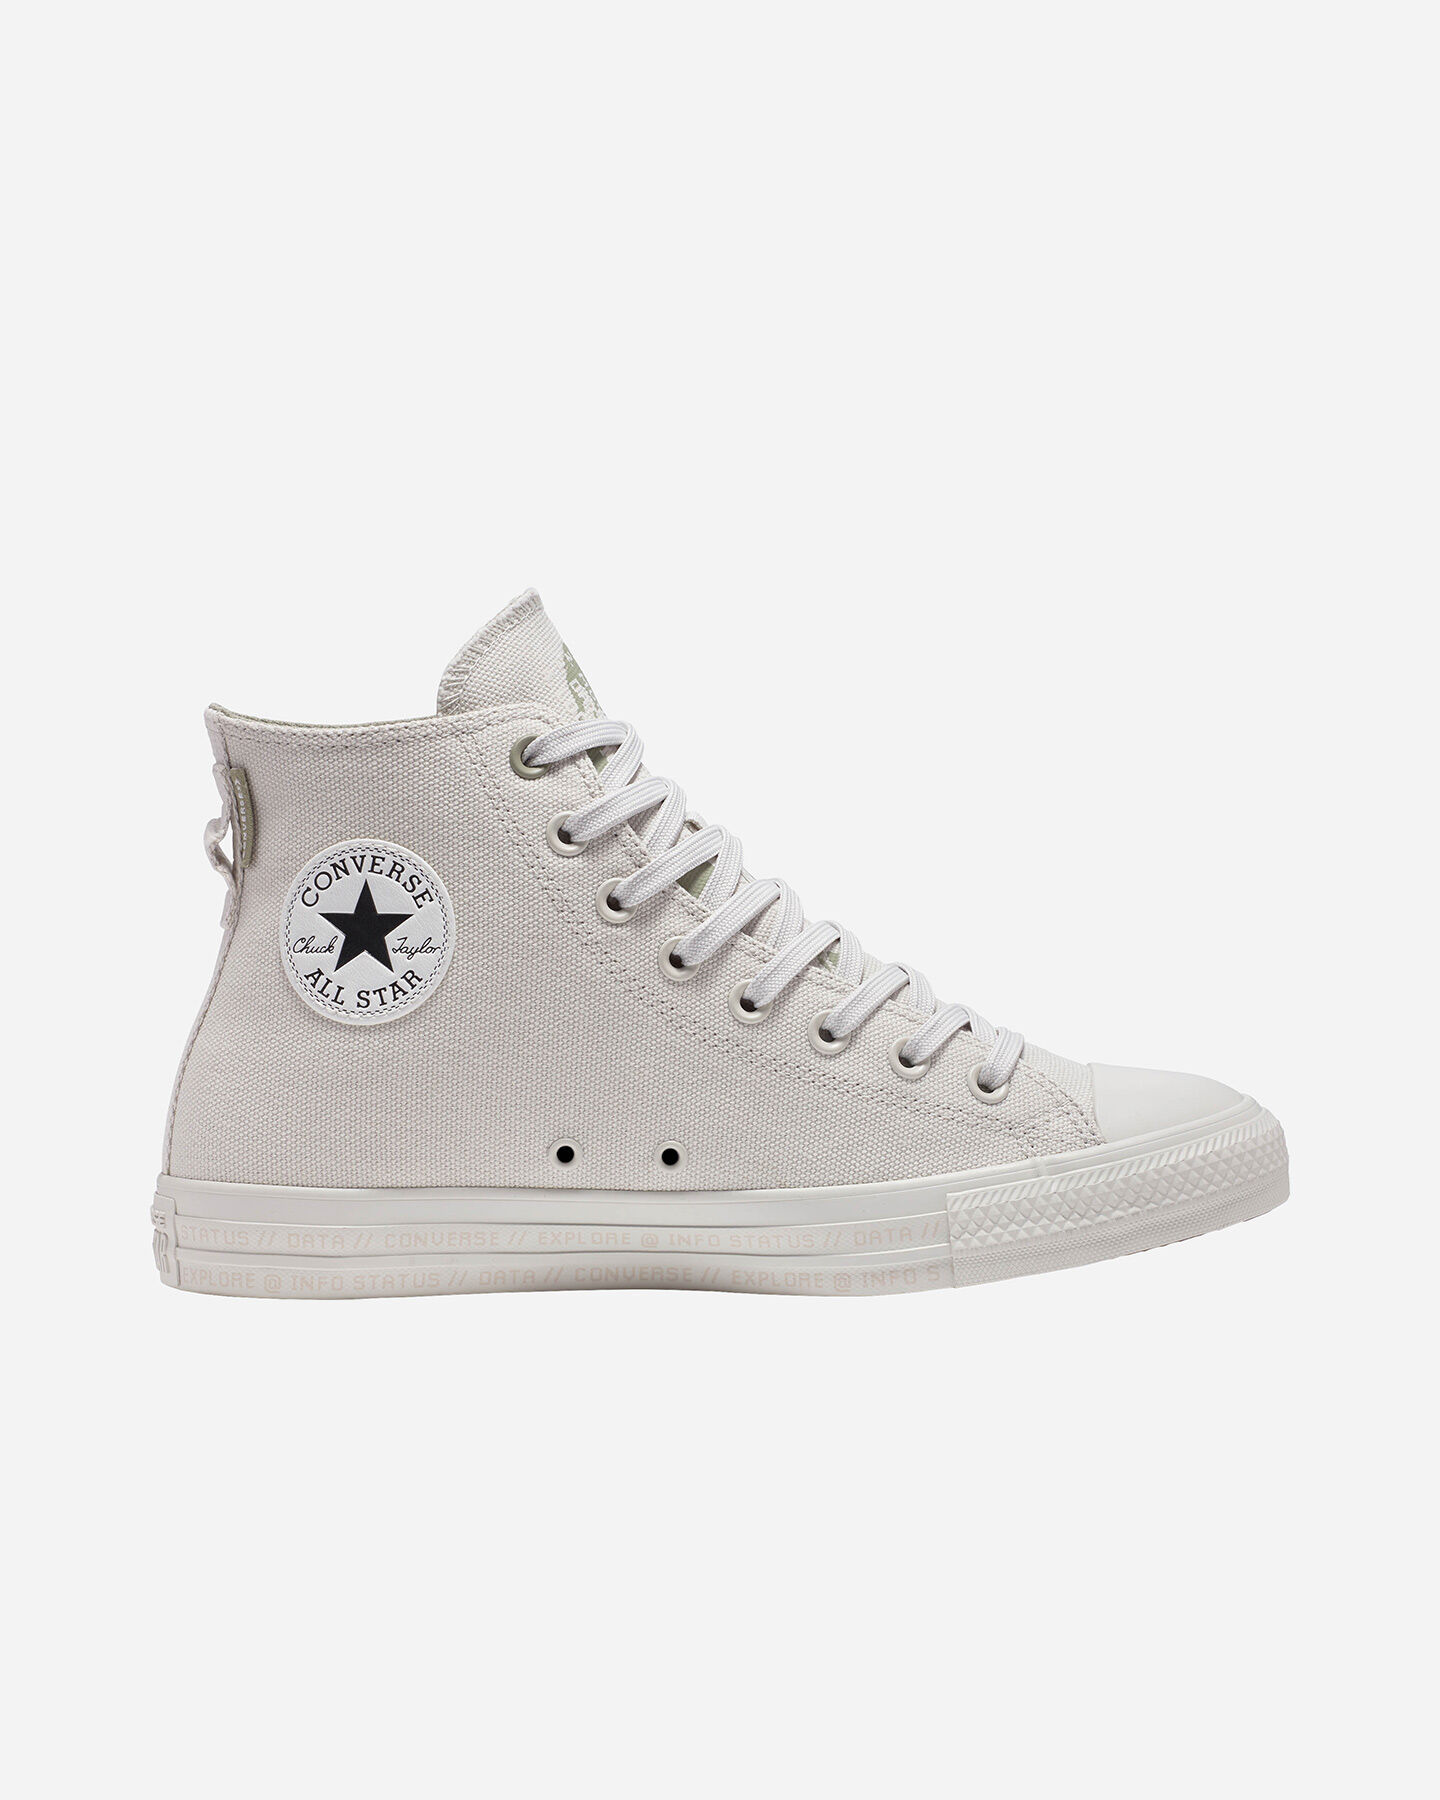  Scarpe sneakers CONVERSE CHUCK TAYLOR ALL STAR HI M S5480503|185|10 scatto 0